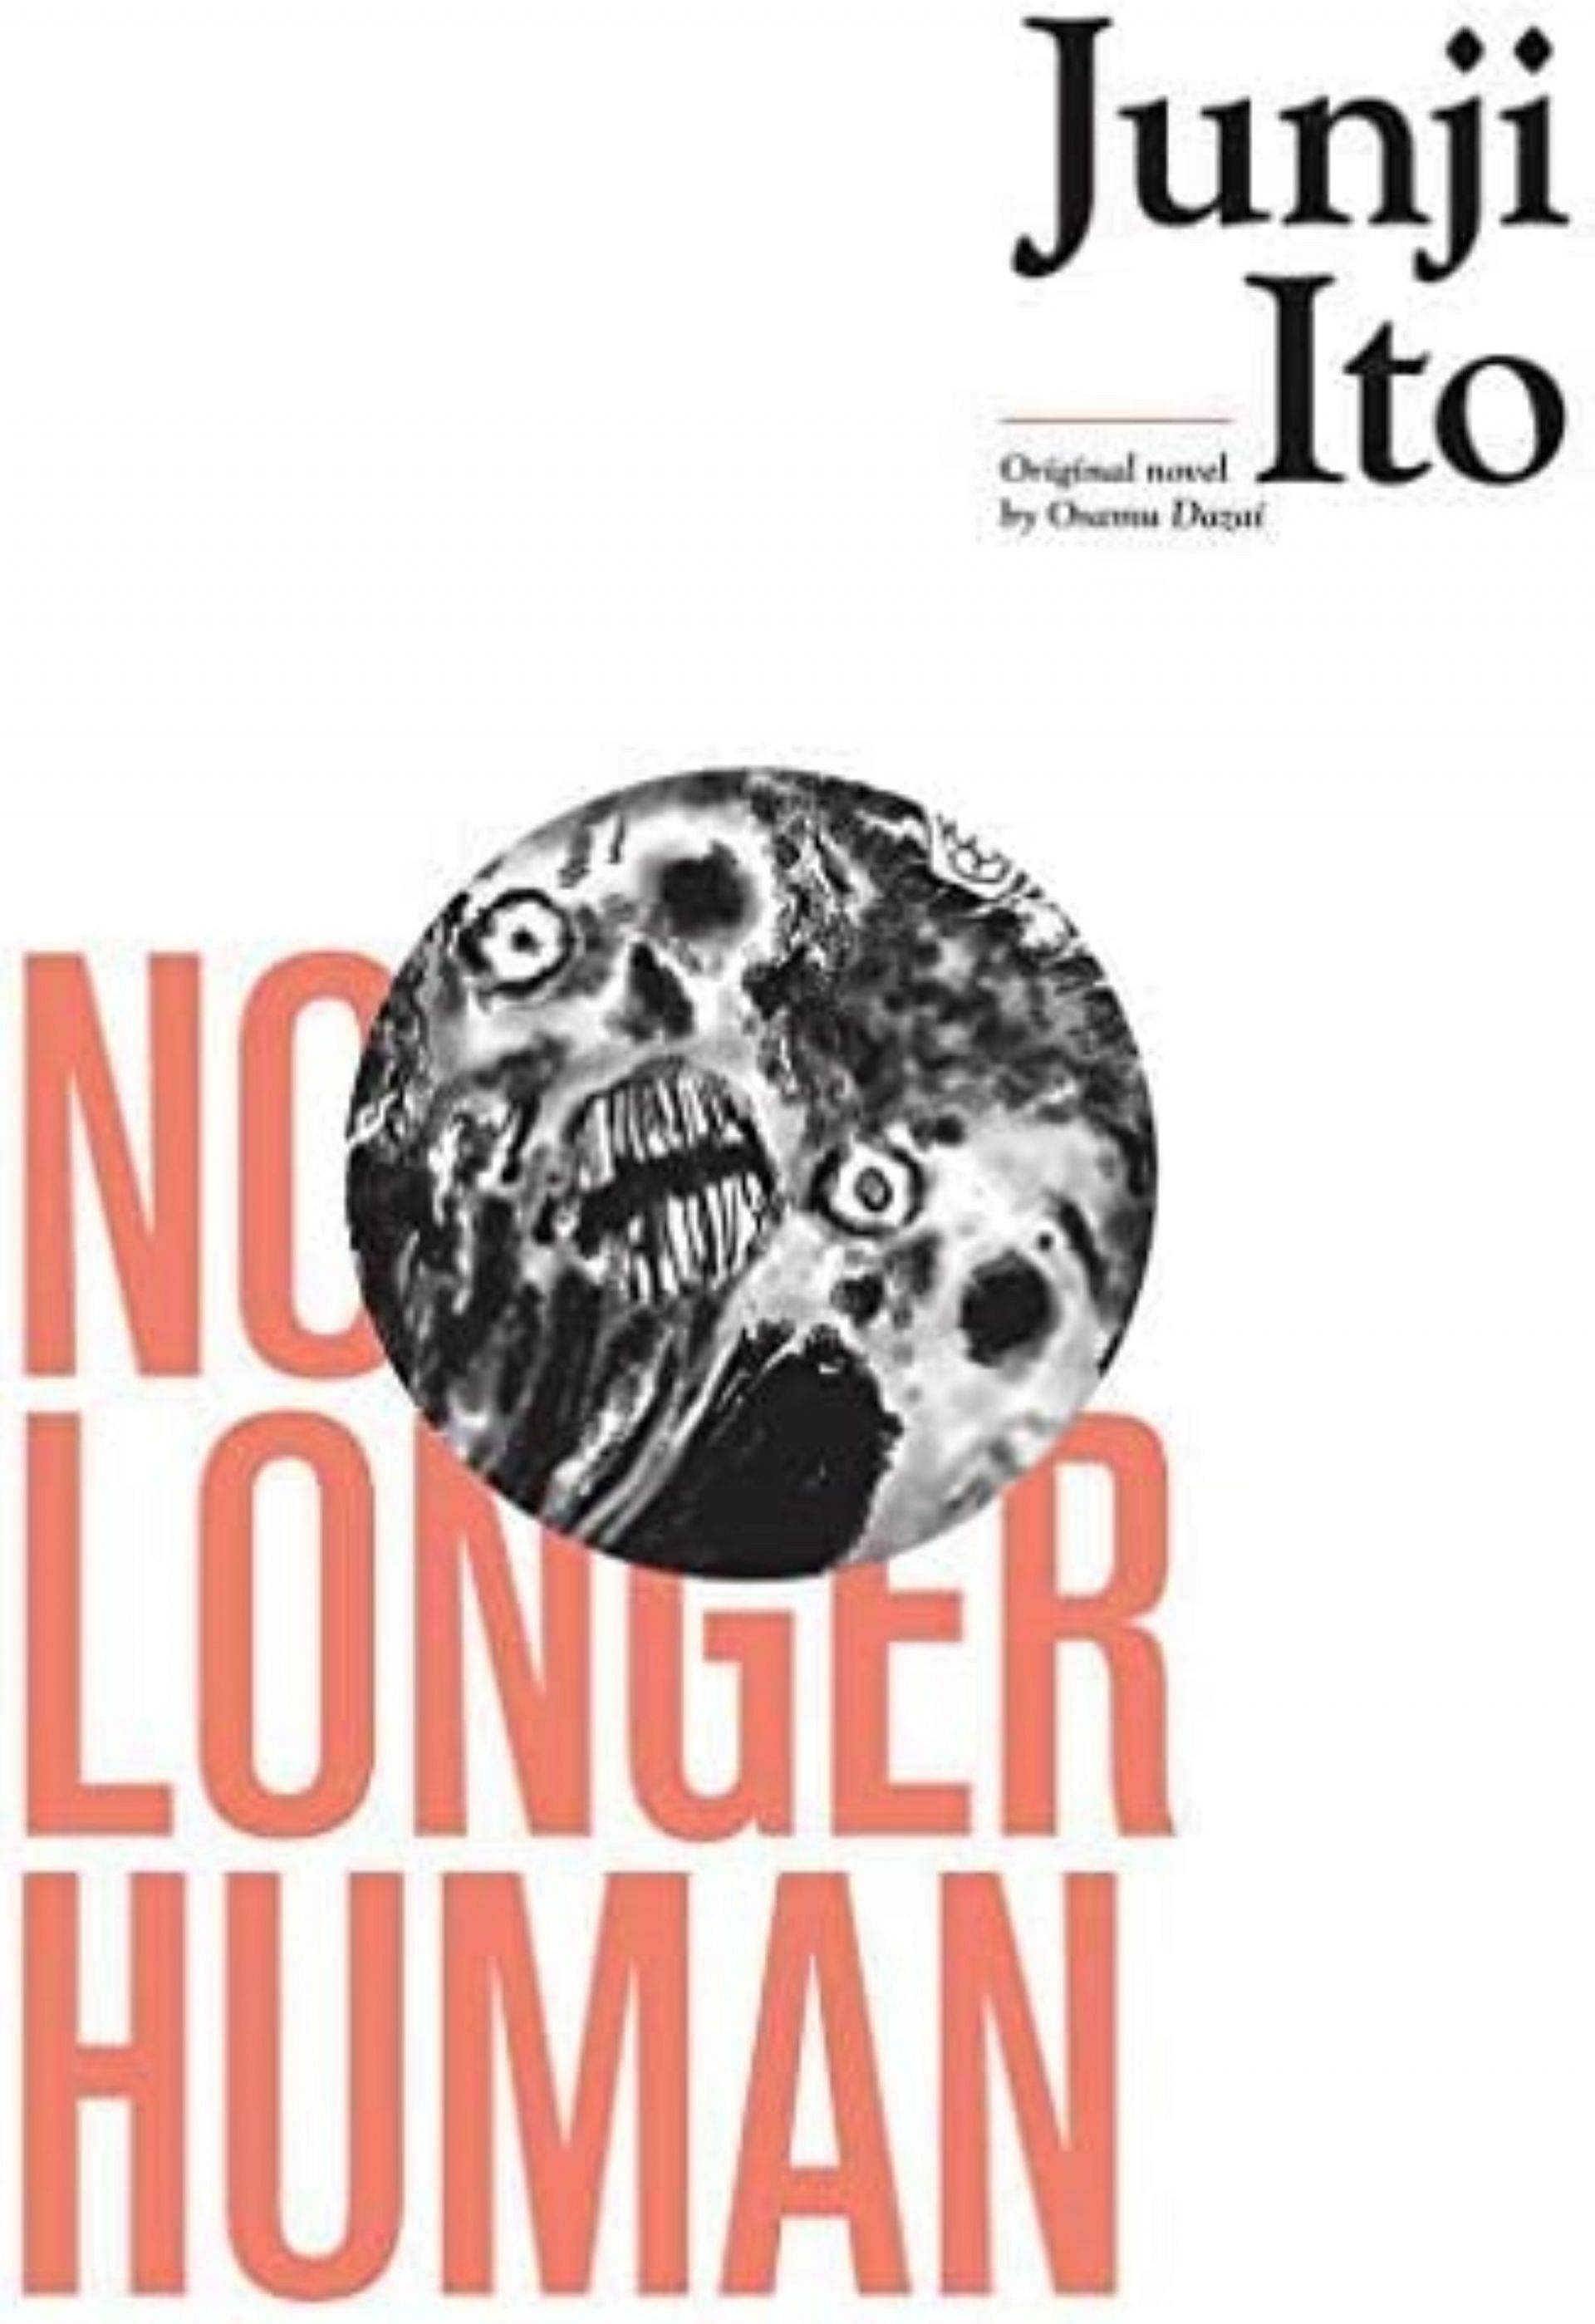 No longer human (Image via Junji Ito/Shogakukan)